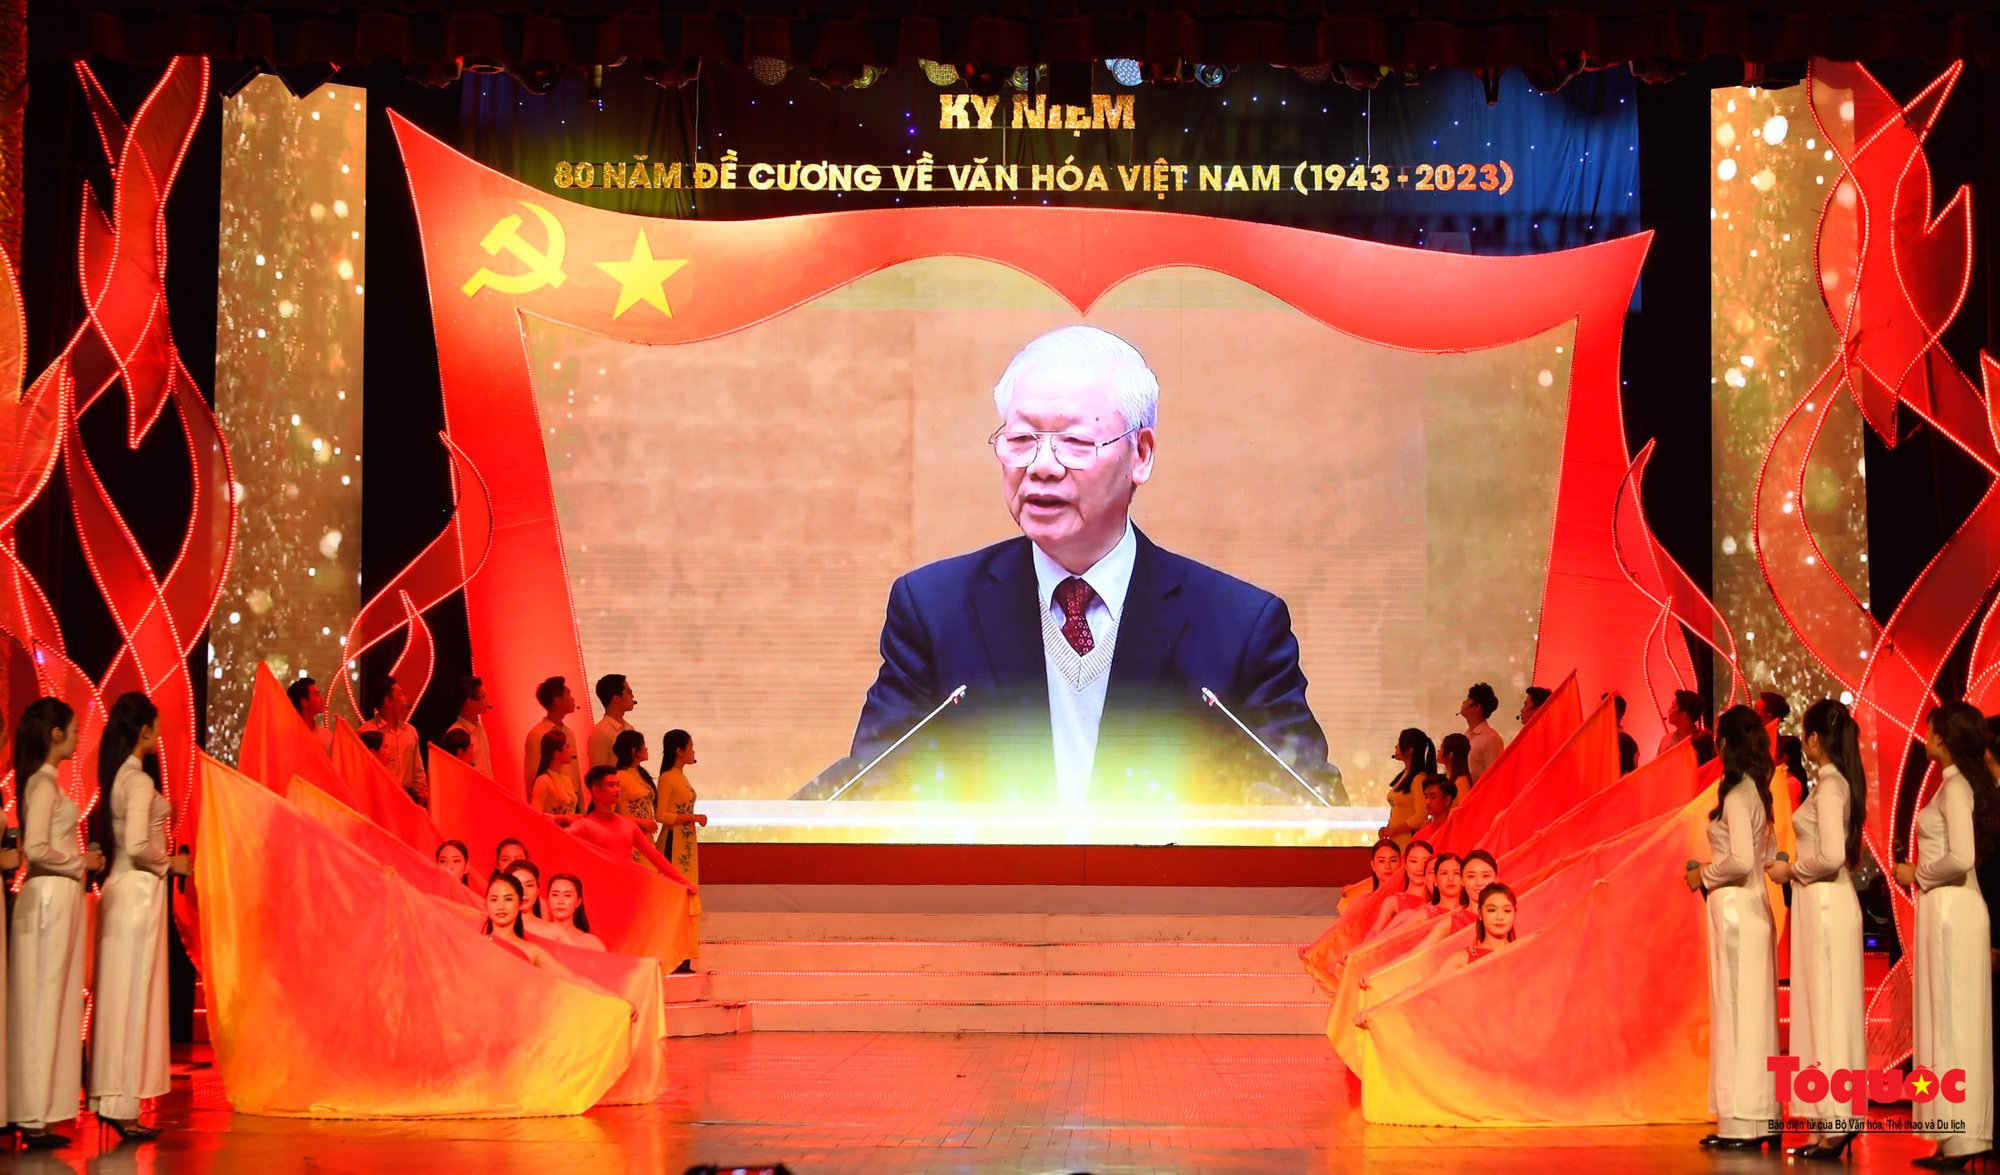 Chùm ảnh: Lễ kỷ niệm và chương trình nghệ thuật đặc biệt kỷ niệm 80 năm ra đời Đề cương văn hóa Việt Nam - Ảnh 16.